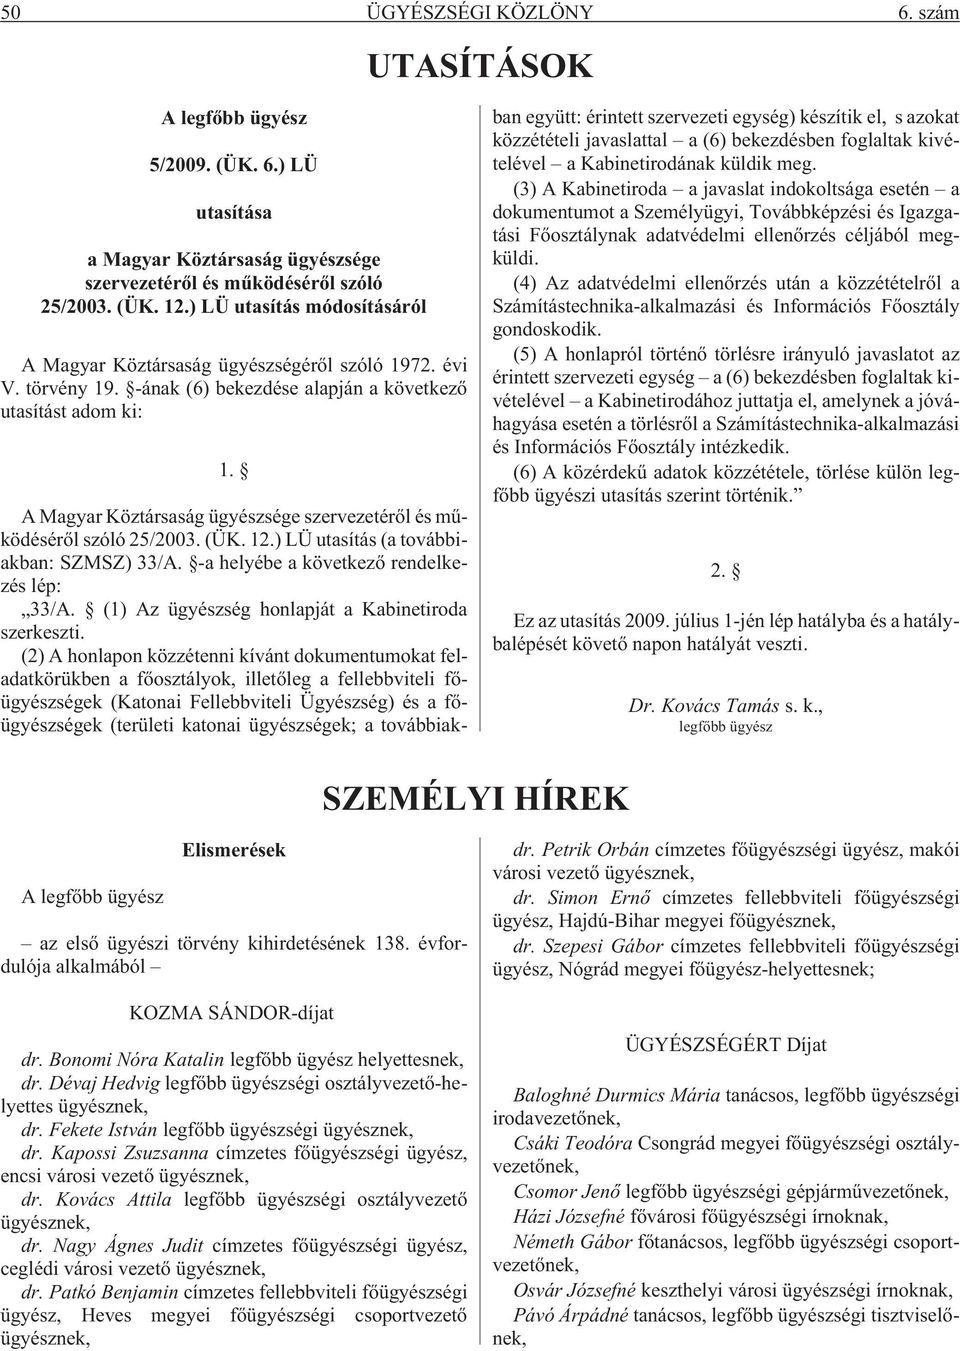 A Magyar Köztársaság ügyészsége szervezetérõl és mûködésérõl szóló 25/2003. (ÜK. 12.) LÜ utasítás (a továbbiakban: SZMSZ) 33/A. -a helyébe a következõ rendelkezés lép: 33/A.